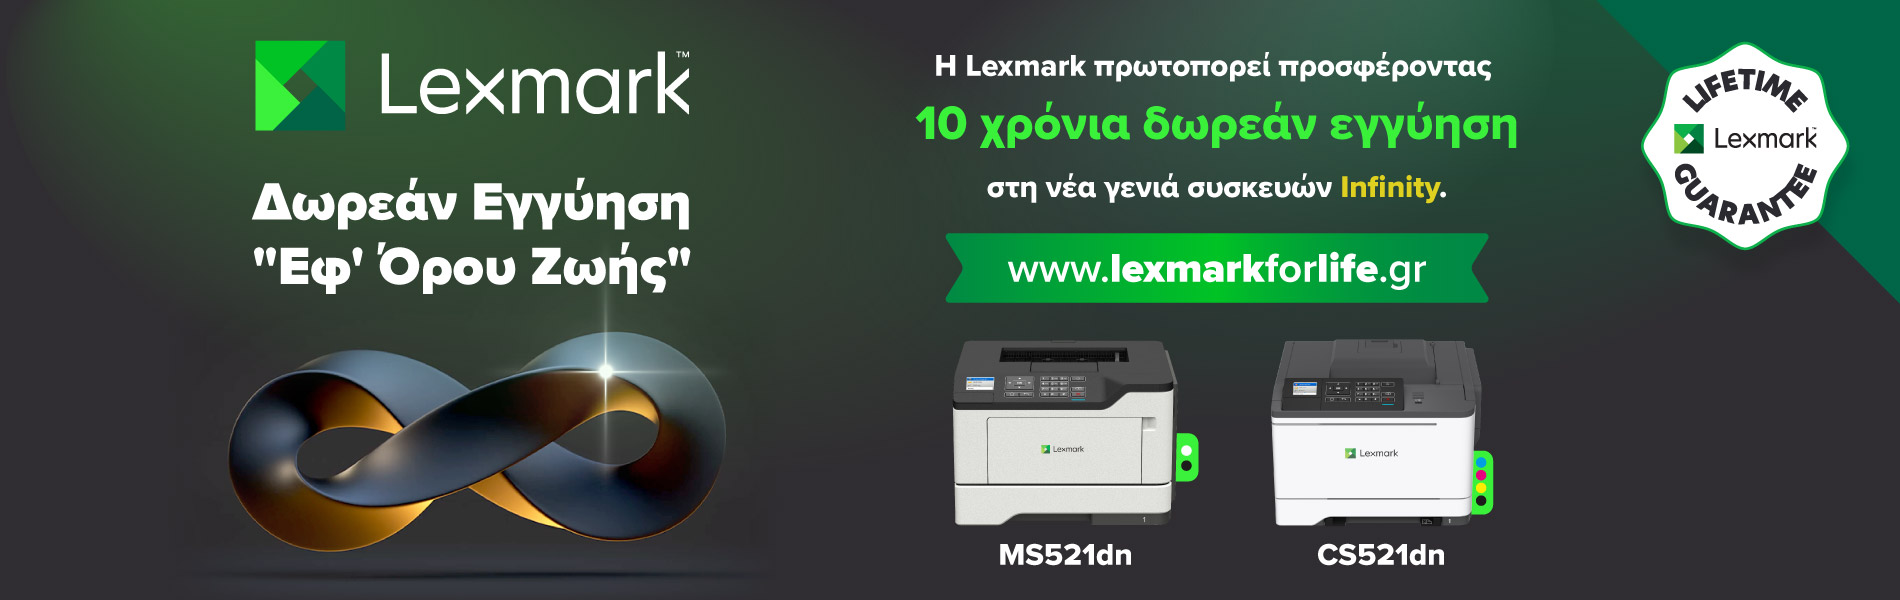  Η εικόνα παρουσιάζει το πρόγραμμα Lexmark Infinity για επέκταση εγγύησης στο Lexmark MS521dn σε έως και 10 έτη!